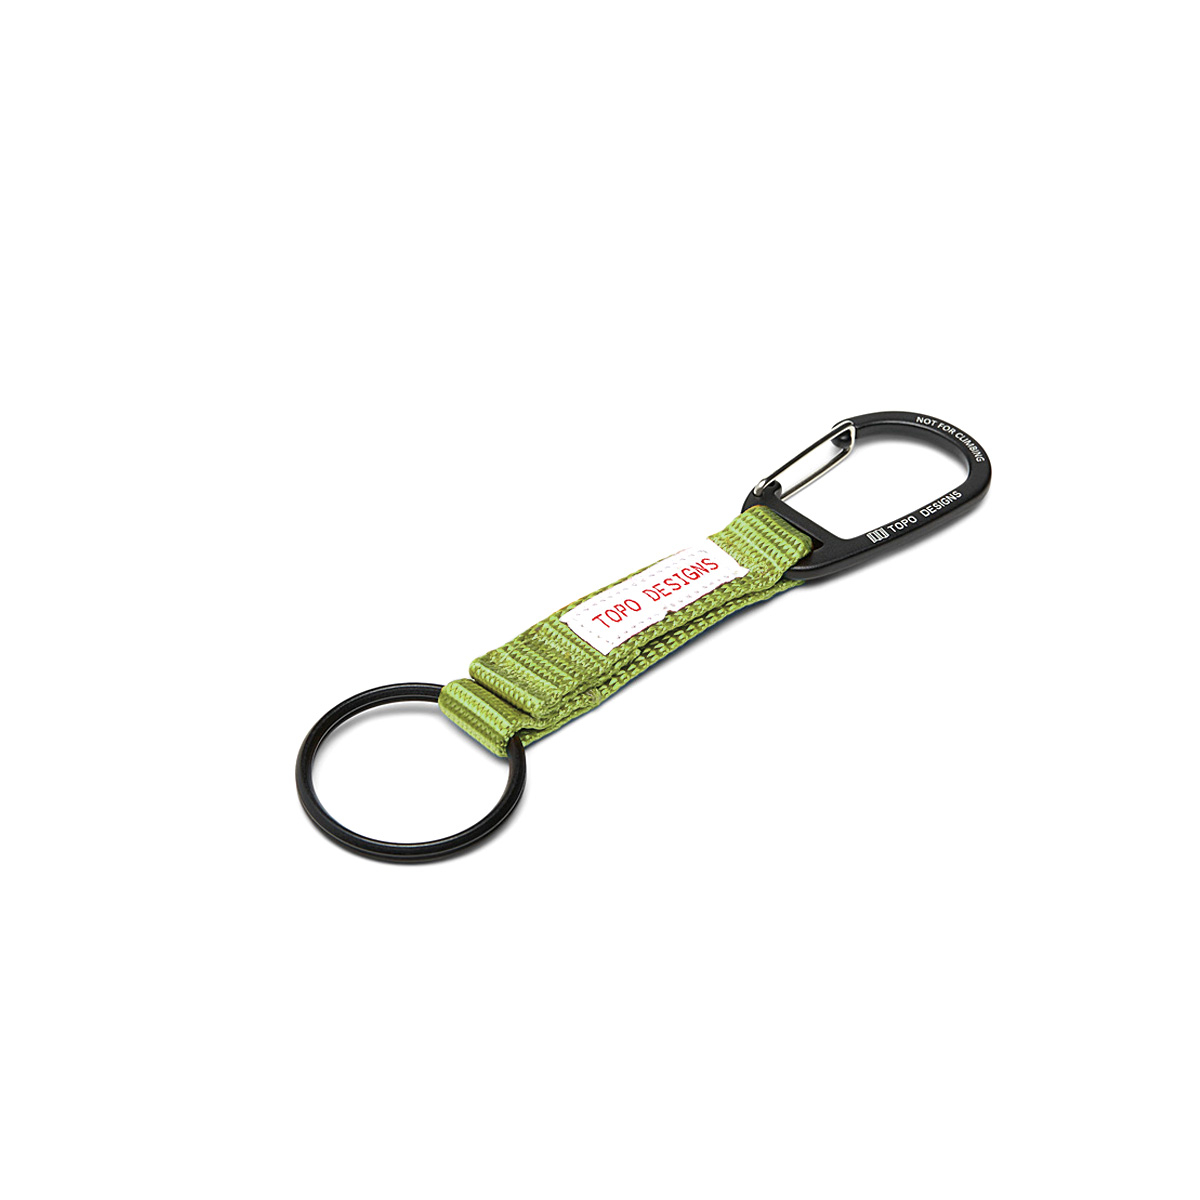 Topo Designs Key Clip Olive, houd sleutels bij de hand en zichtbaar met de Key Clip